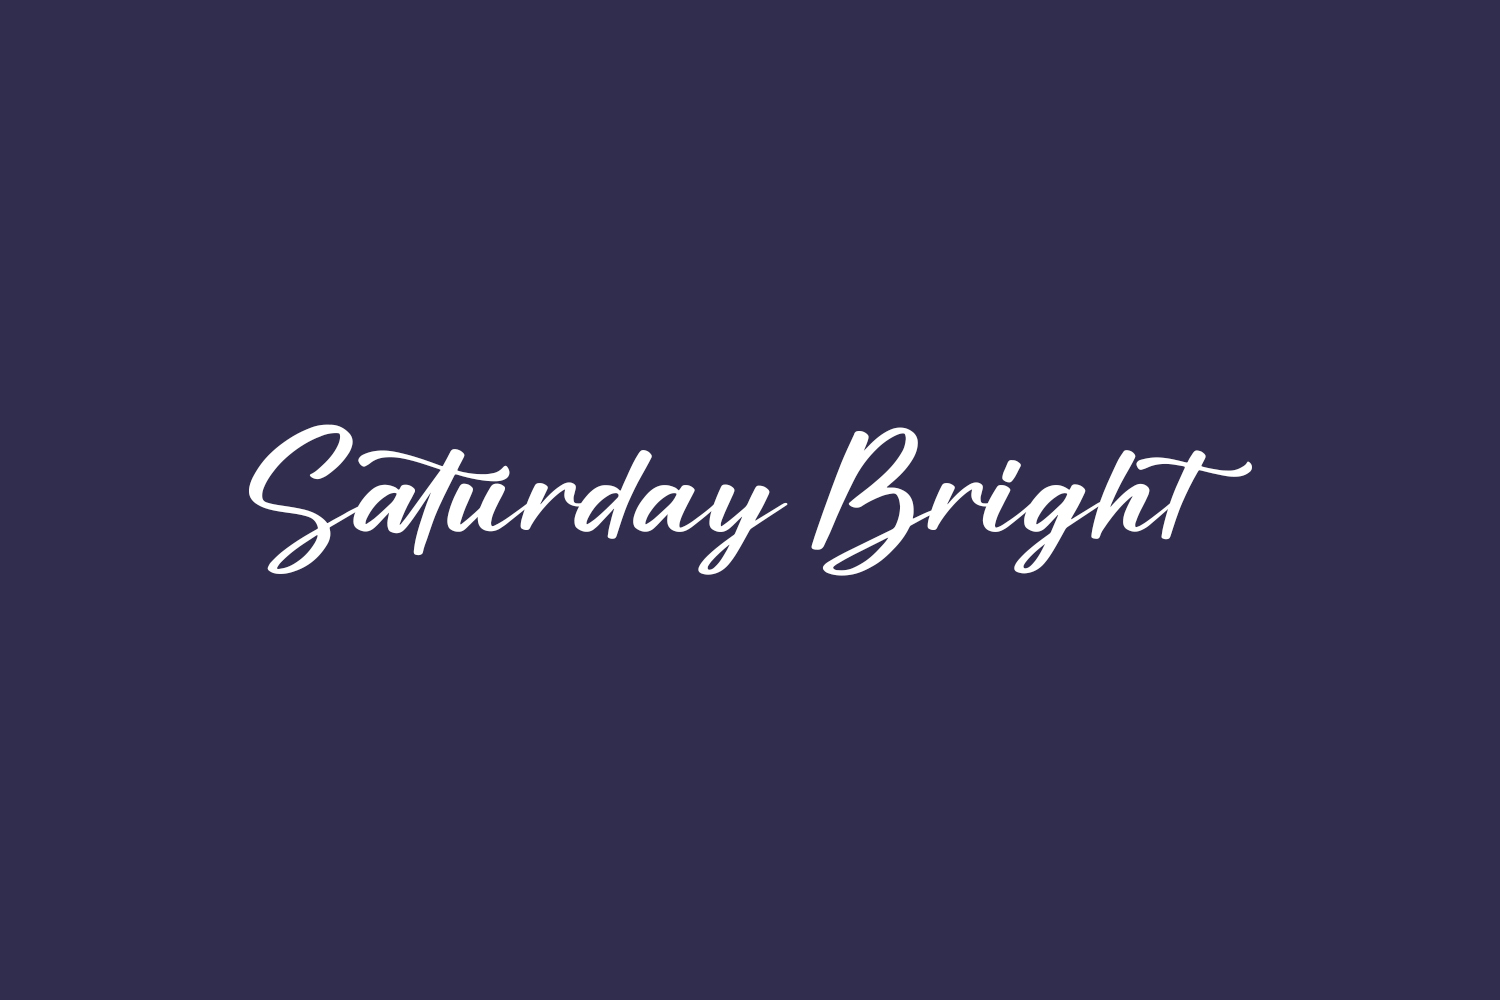 Saturday Bright Free Font